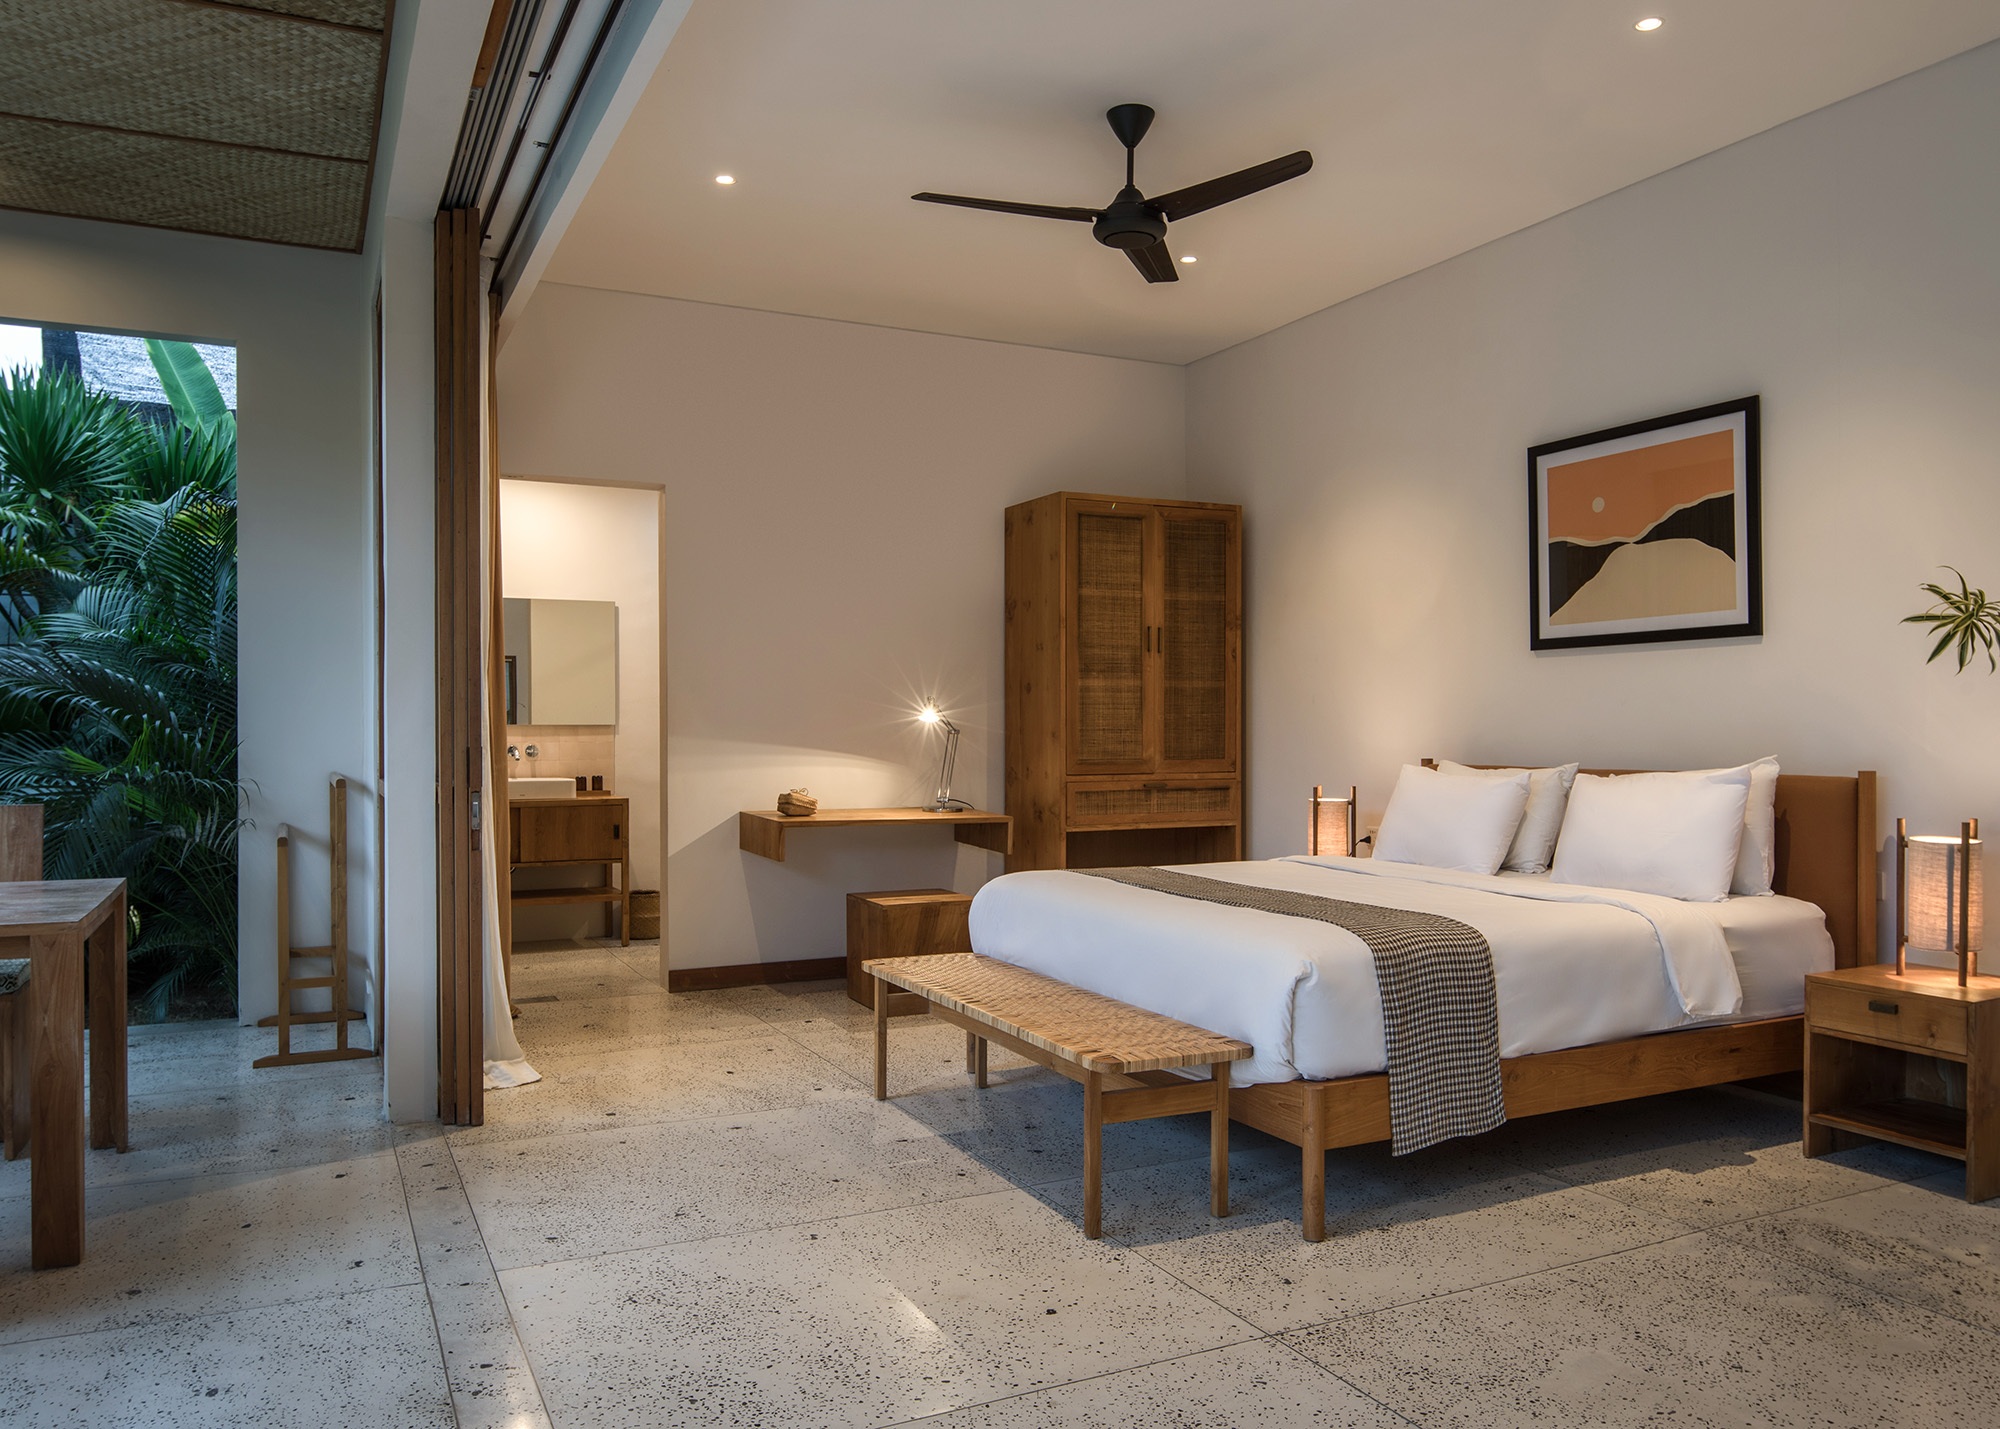 Design Assembly - Two Palms Studio - Bali Architect - Interior Design - Bali Villa - Bedroom